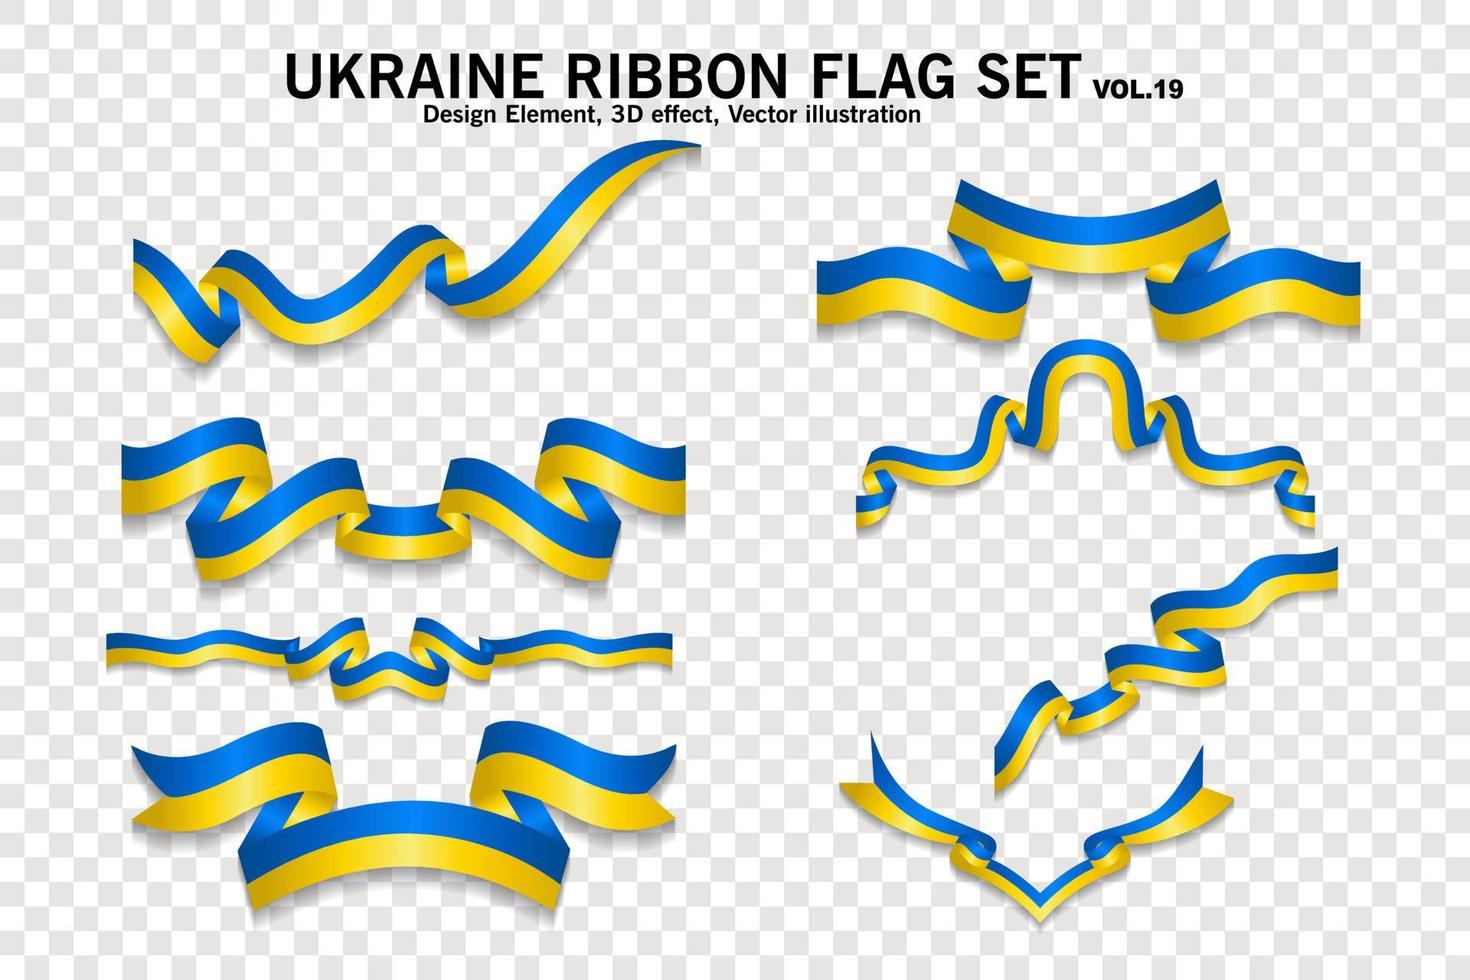 set di bandiere a nastro ucraina, elemento di design. 3d su uno sfondo trasparente. illustrazione vettoriale